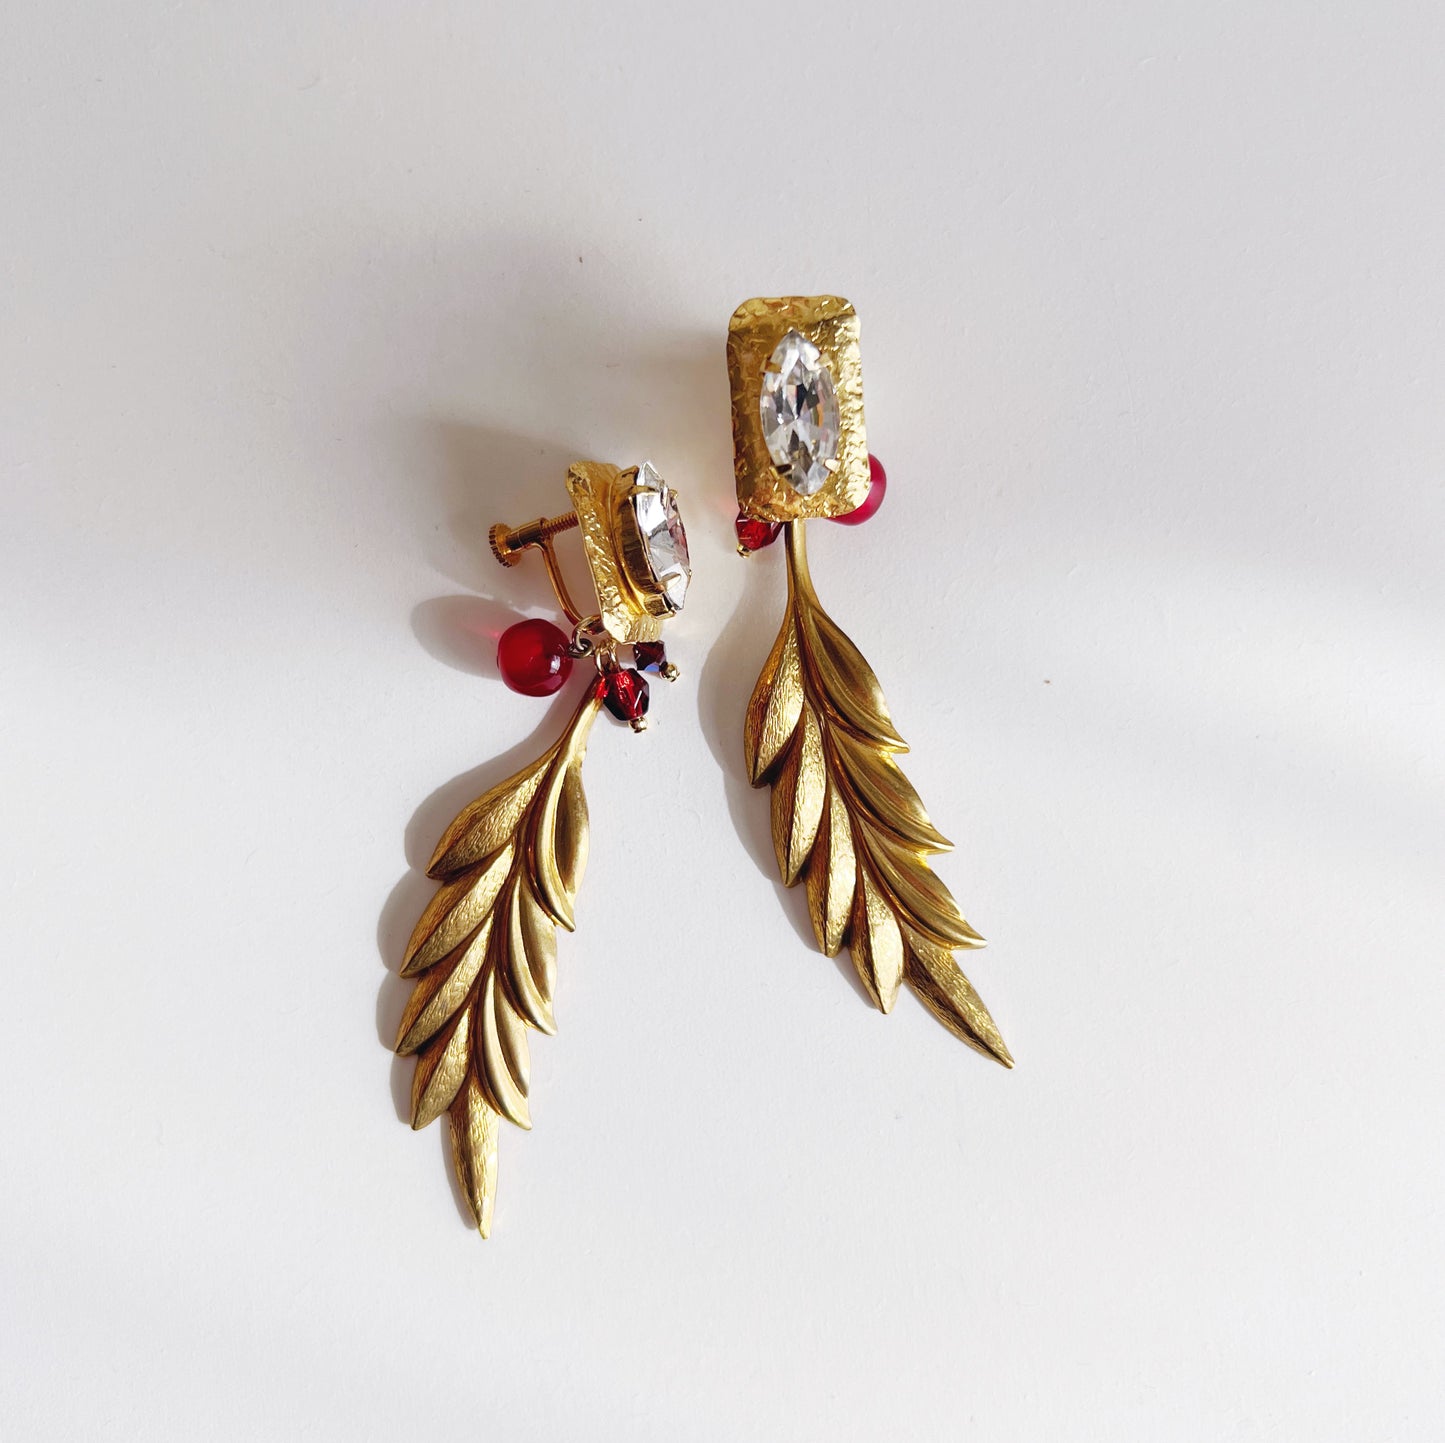 Vintage leaf earrings